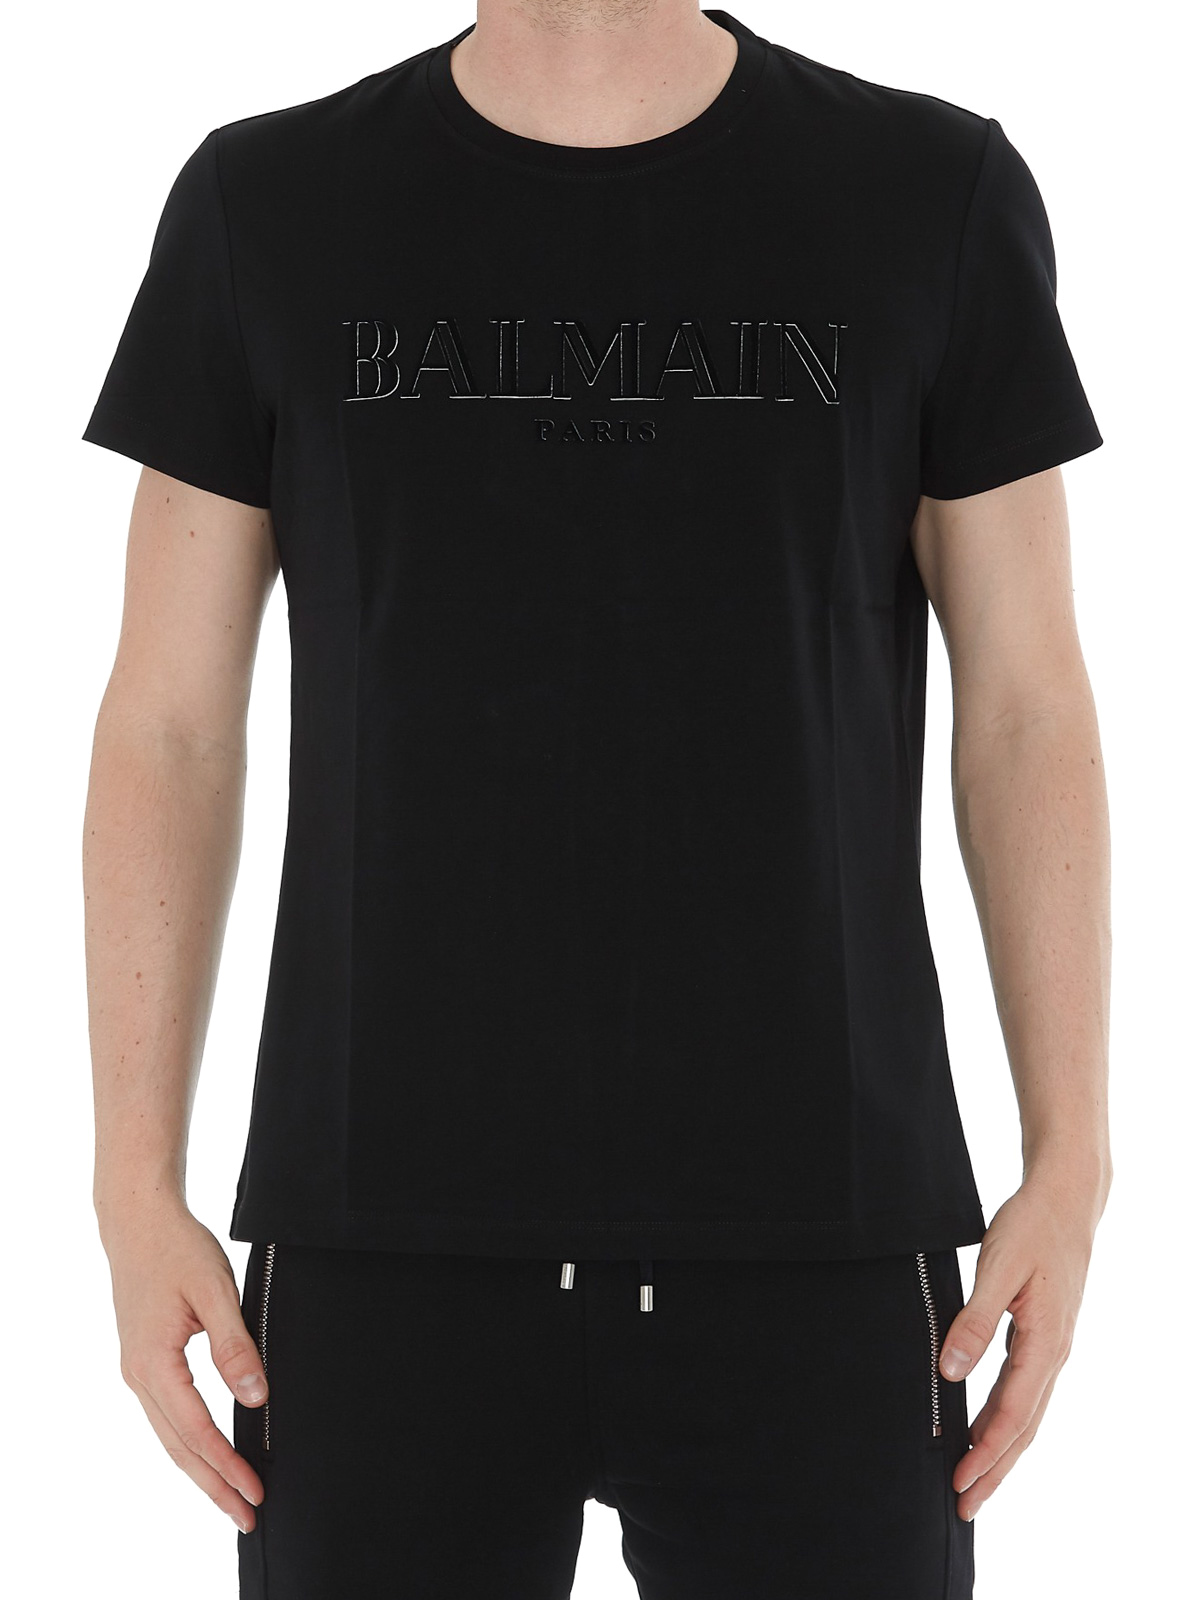 balmain shirt black